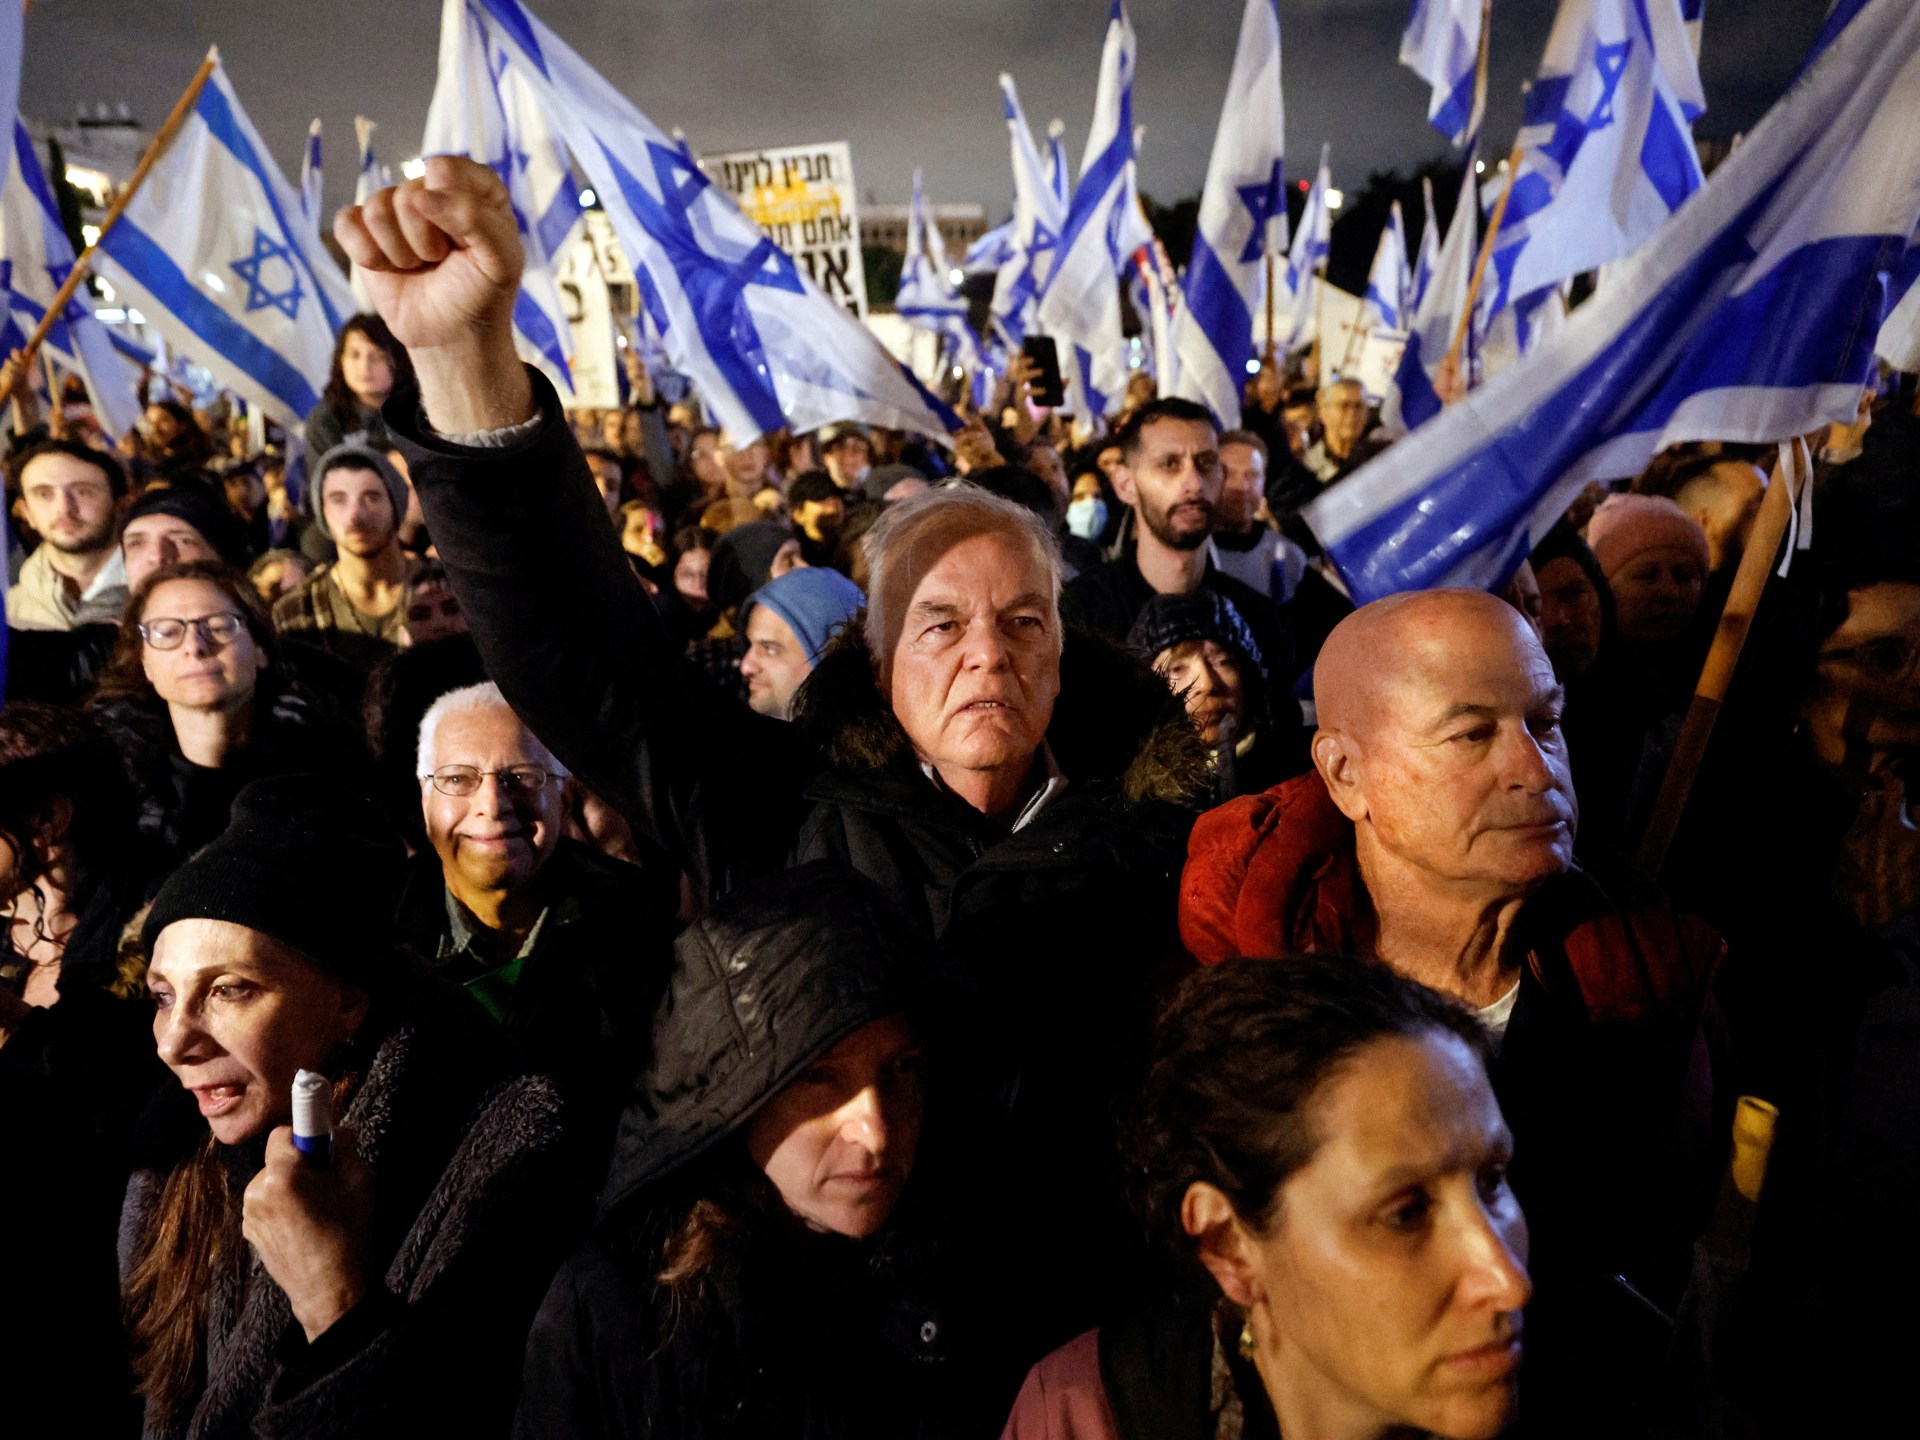 Tienduizenden Israëli’s protesteren tegen Netanyahu’s juridische hervormingen |  Protestnieuws